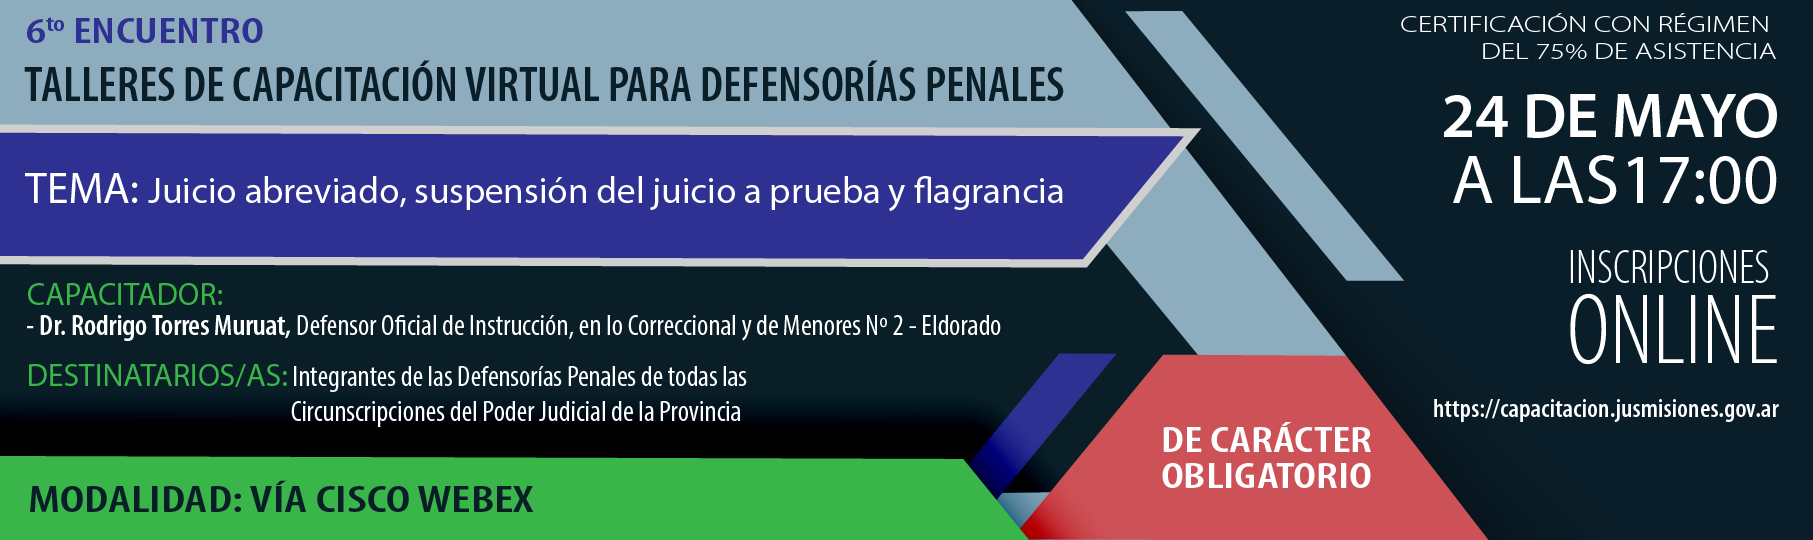 P6_Talleres_de_cap_virtual_para_Defensoras_penales-01